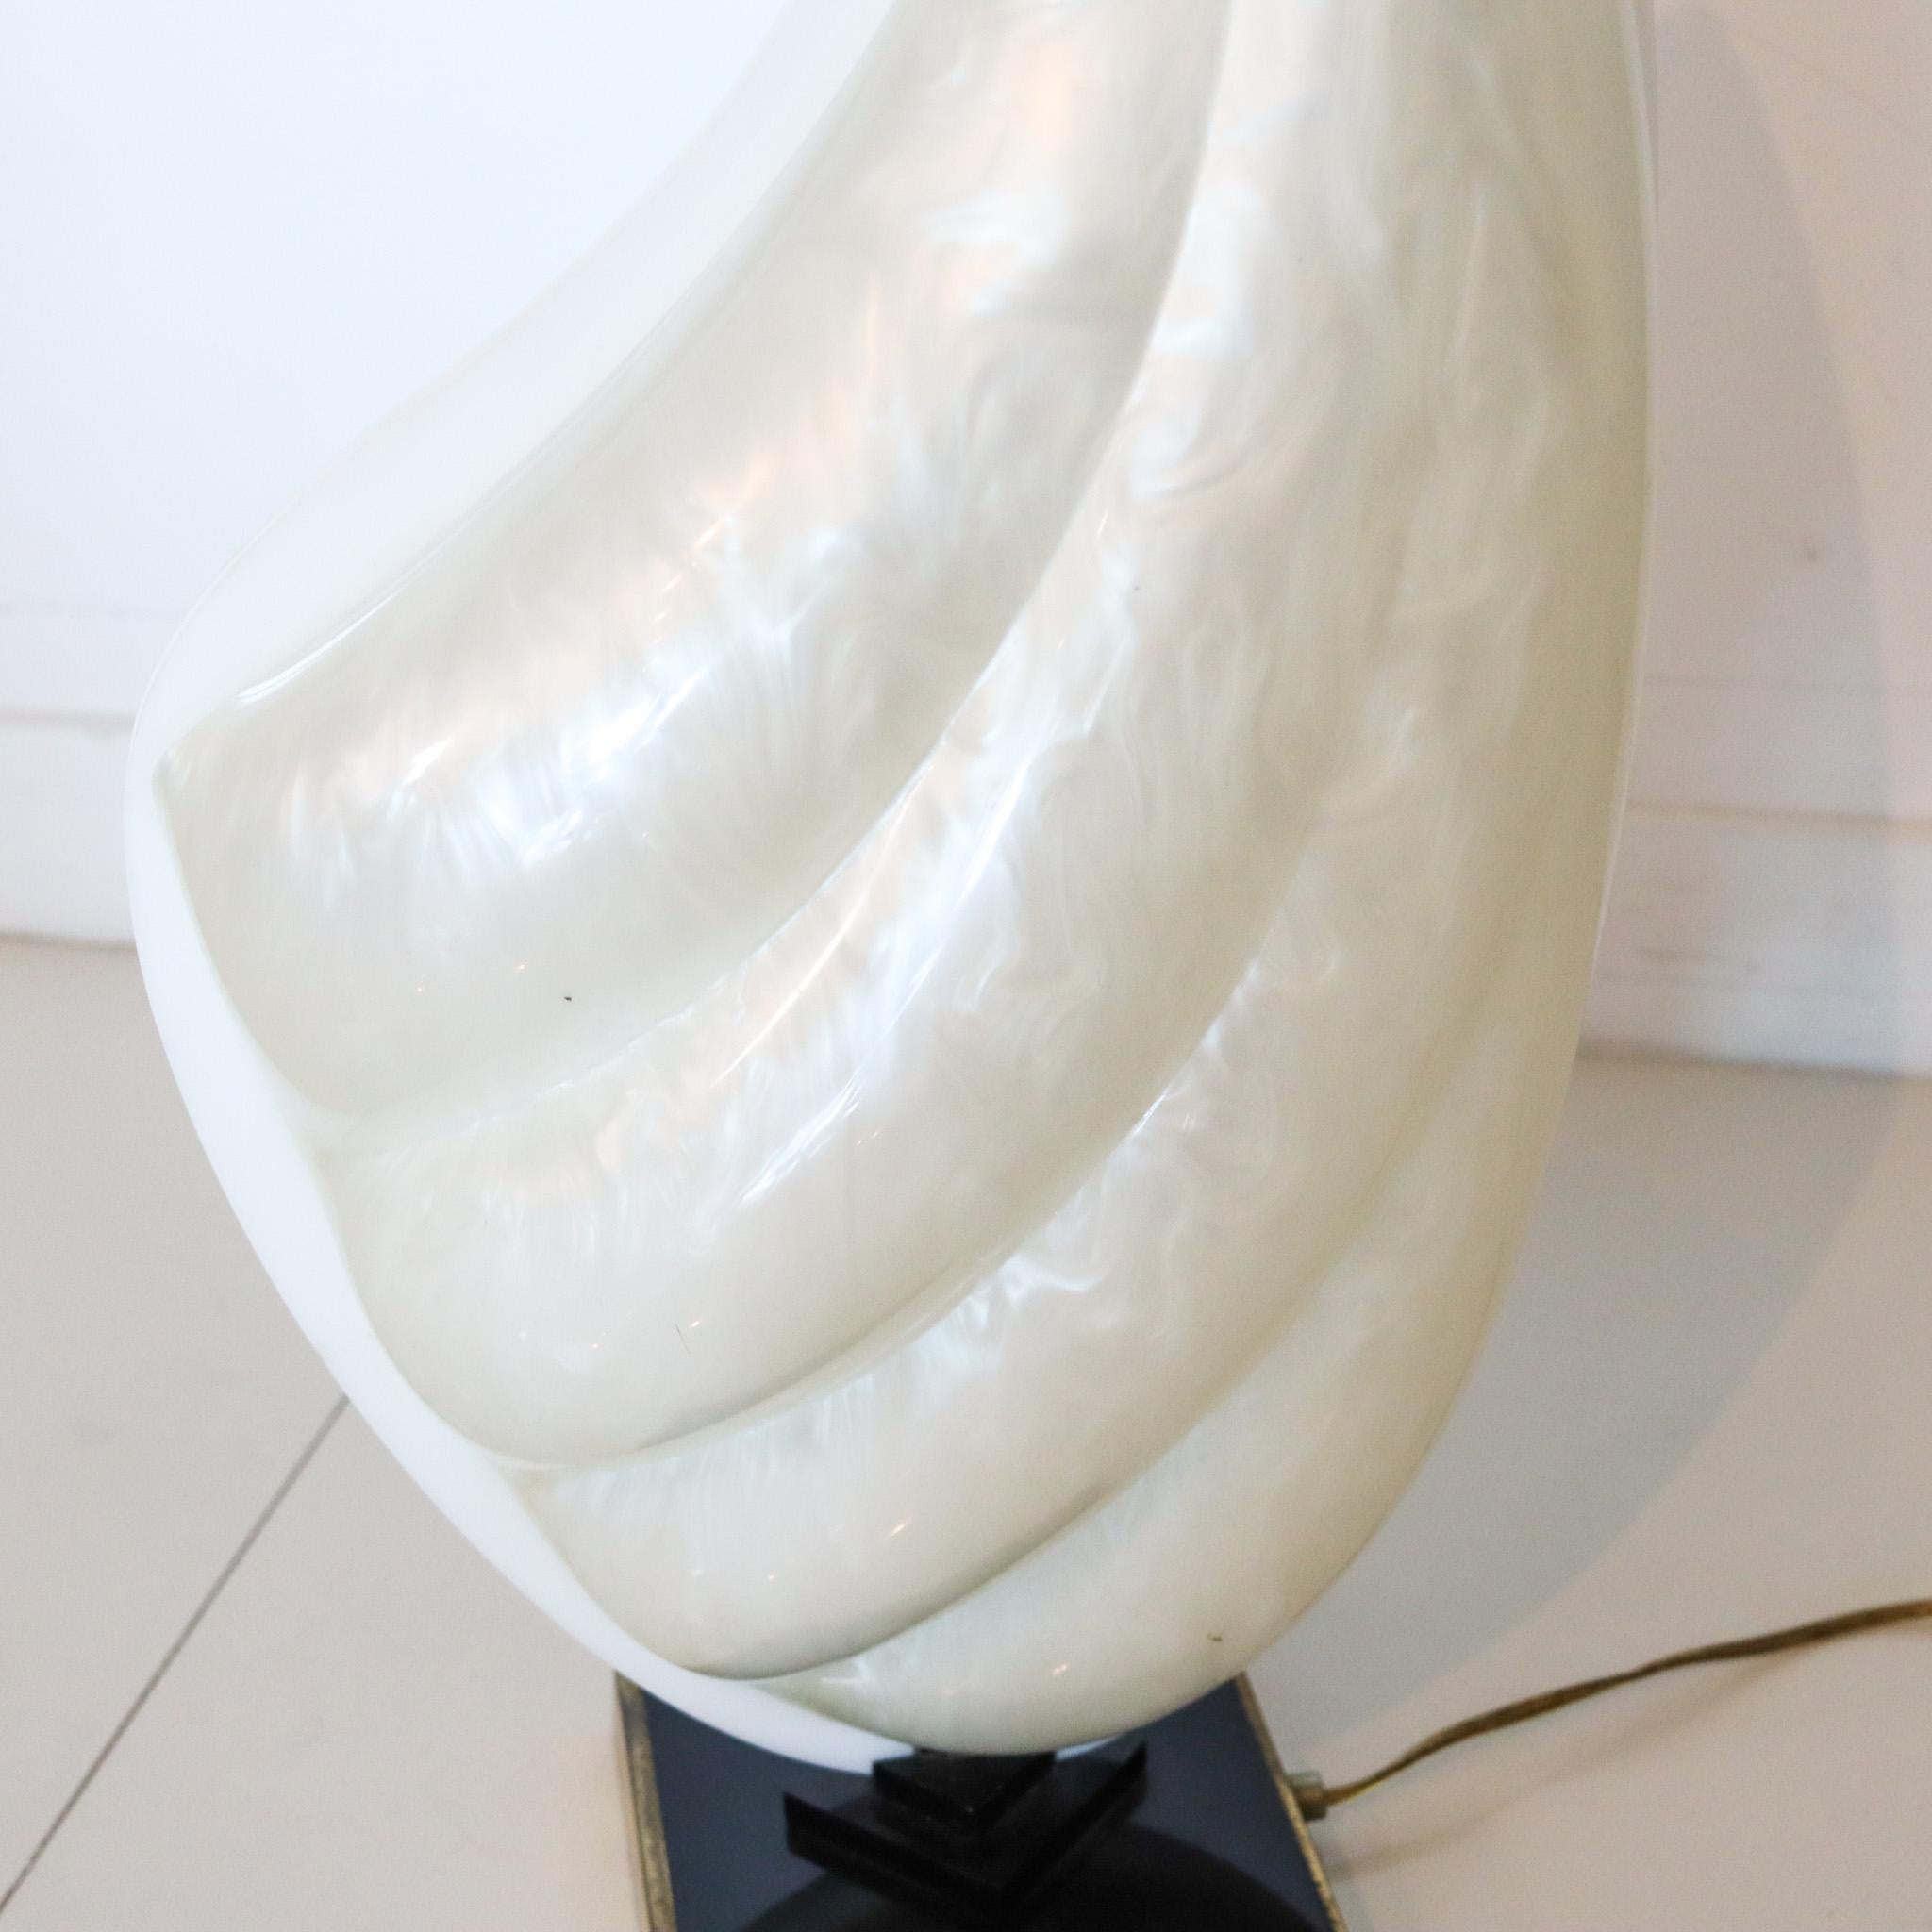 Lampe de table conçue par Roger Rougier (1926-1993).

Une pièce sculpturale moderniste vintage, créée par le designer franco-canadien Roger Rougier, dans les années 1970. Whiting a été conçu en forme de grande palourde et réalisé avec des acryliques